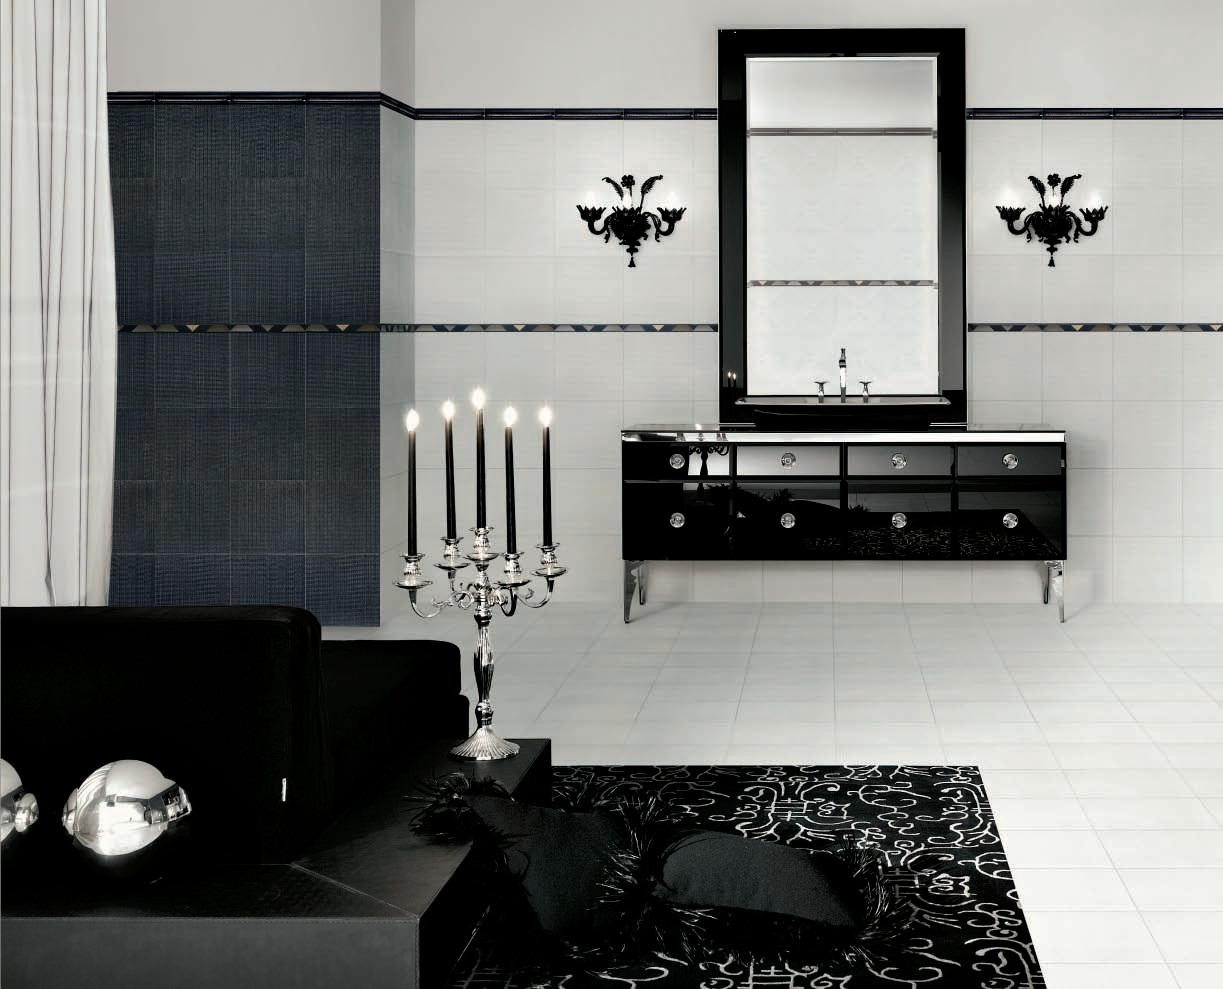 Ванная комната, дизайн Visionnaire by Ipe Cavalli